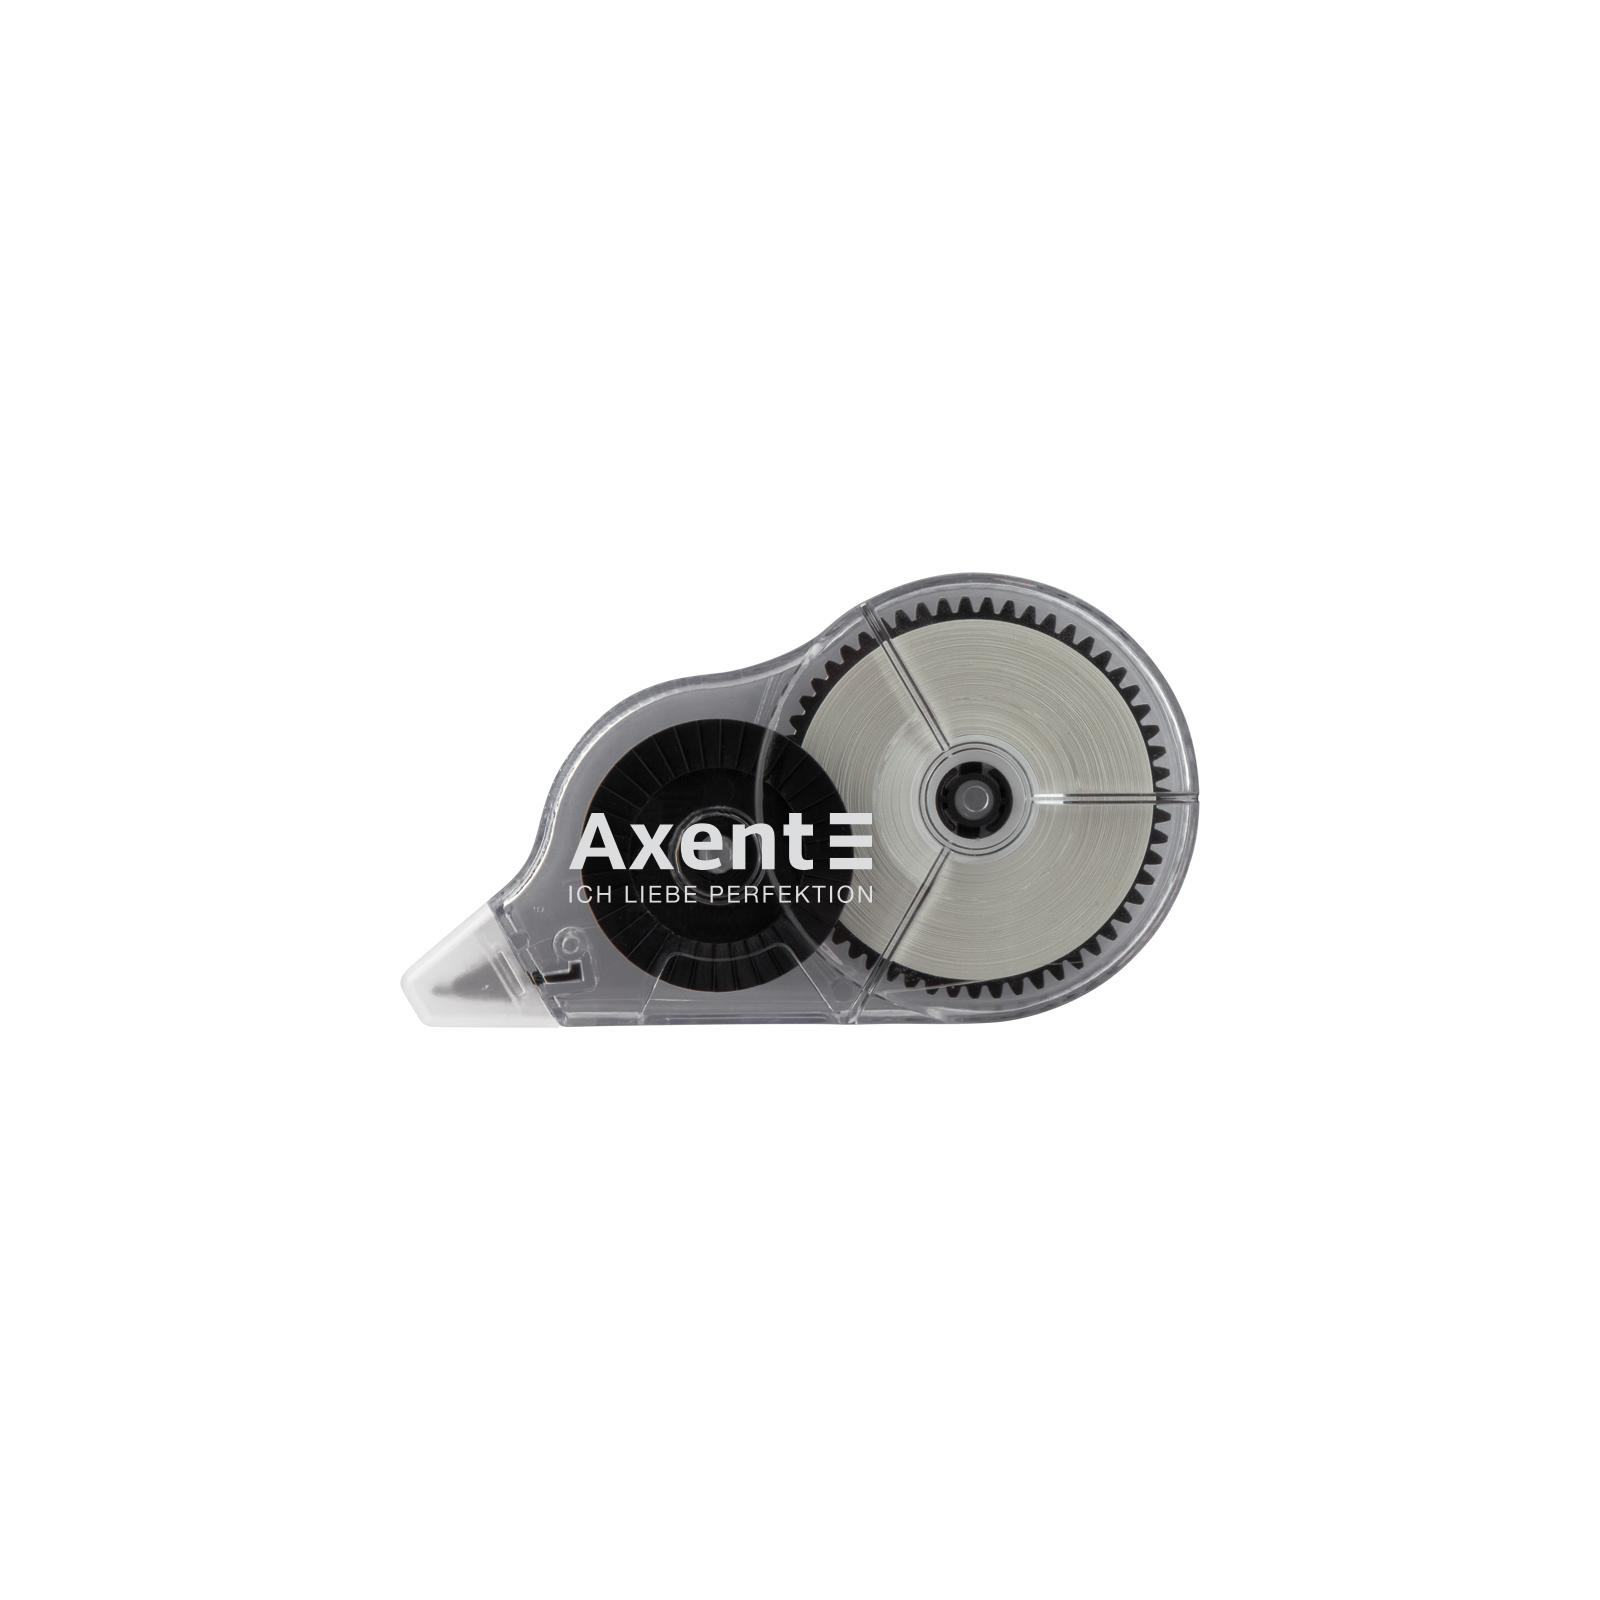 Коректор Axent стрічковий 5мм х 30м сірий (7011-A)